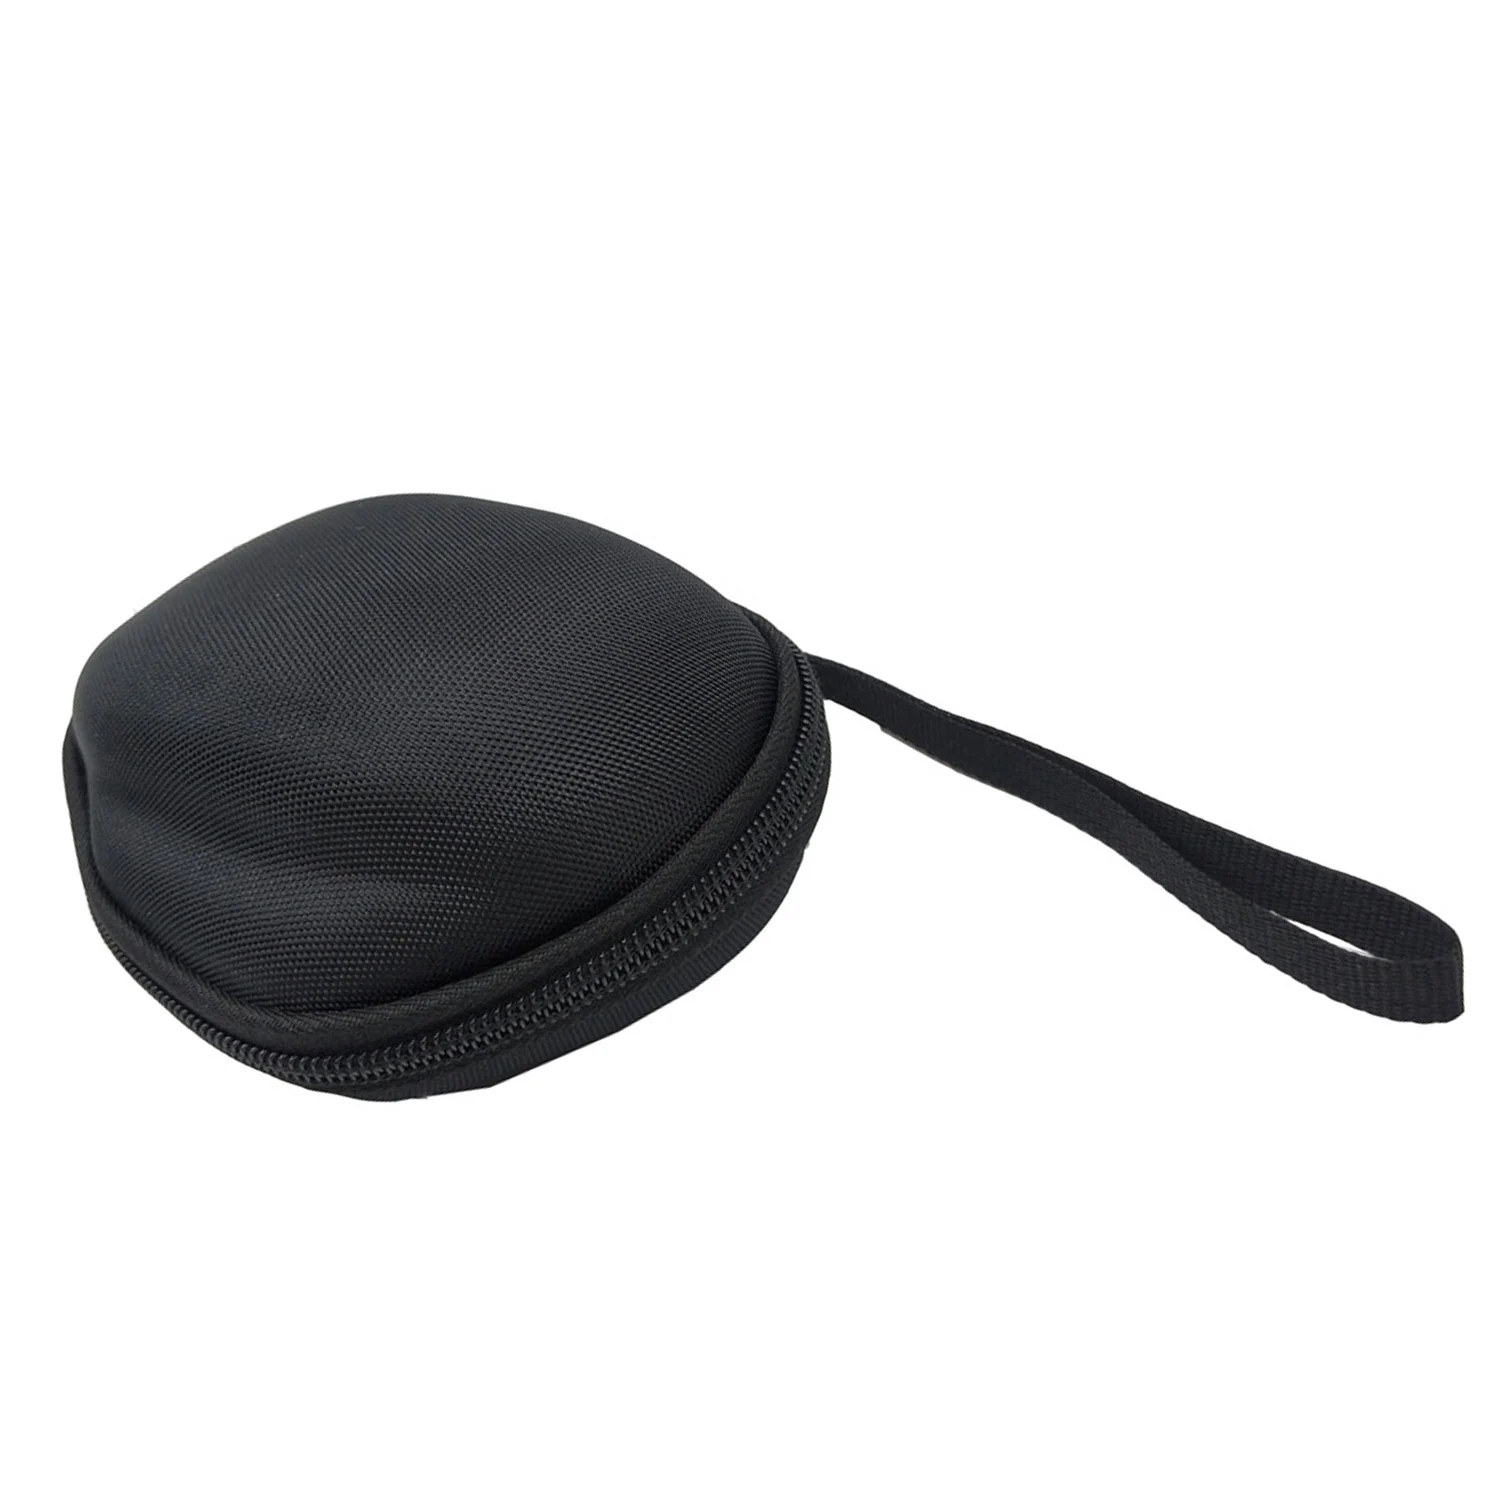 Besegad портативный ударопрочный чехол для кабеля, для хранения, защитная сумка-чехол, чехол для lotech MX Master/MX Master 2 S mouse